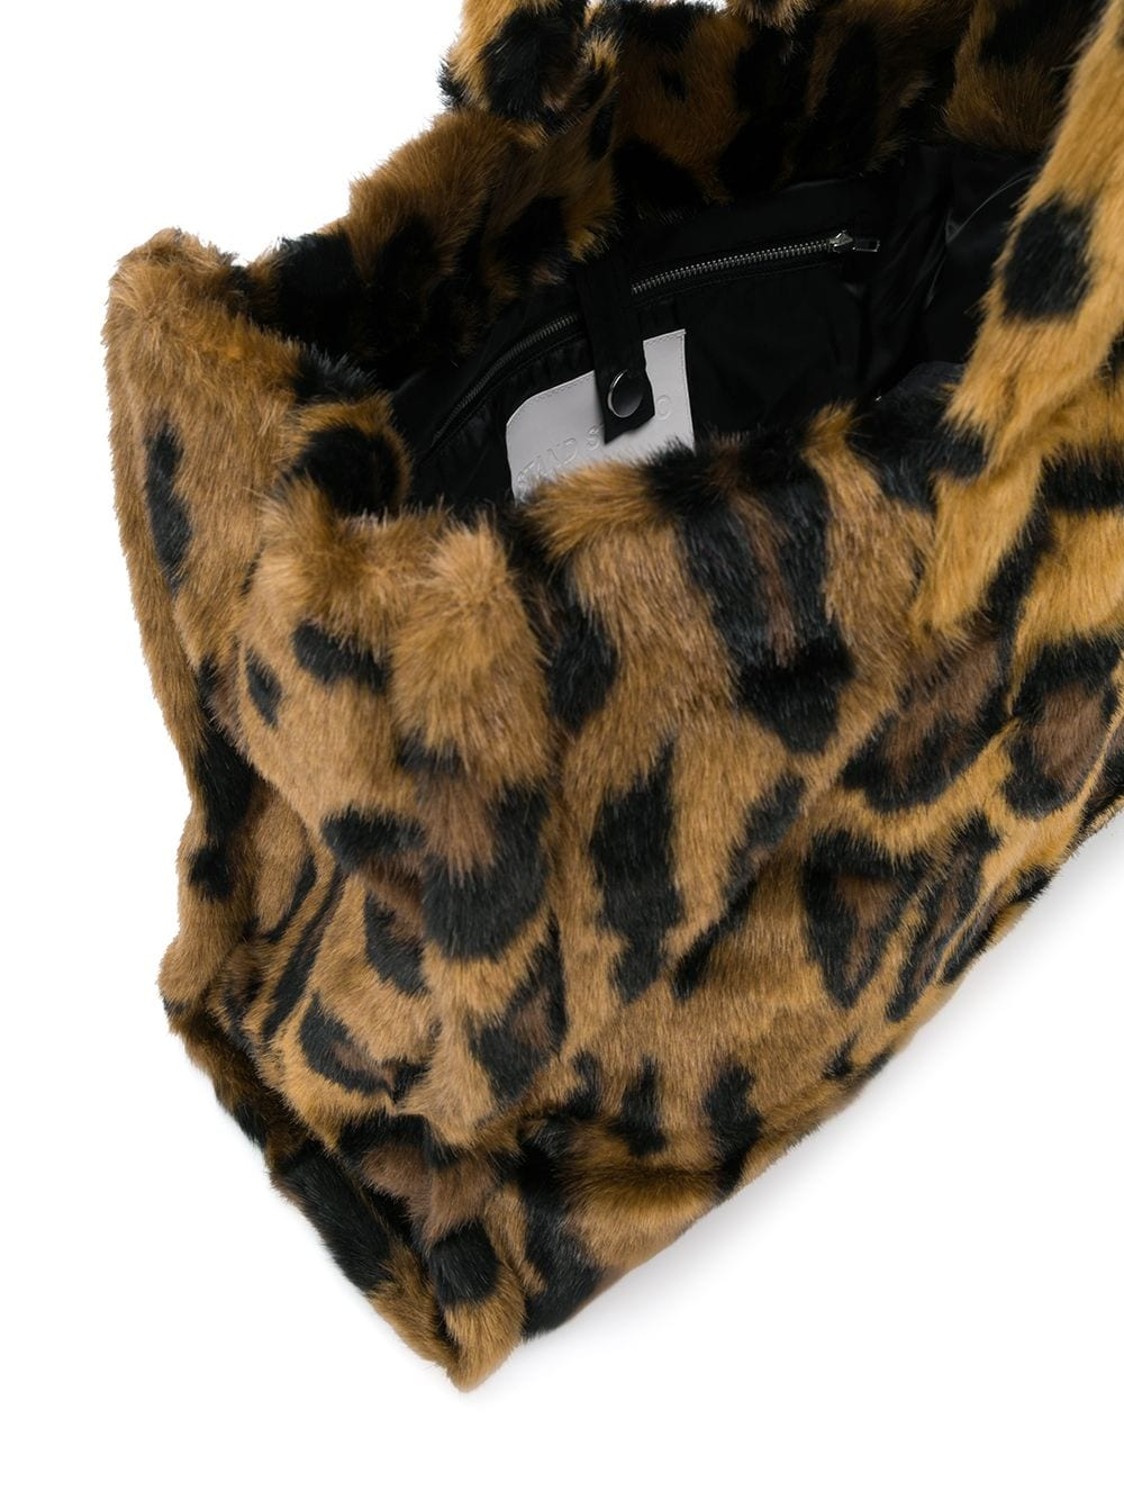 shop Stand Studio  Borse: Borsa Stand, tote bag, in eco pelliccia leopardata, chiusura con bottone, piccola tasca con zip interna.

Composizione: 100% poliestere. number 1595